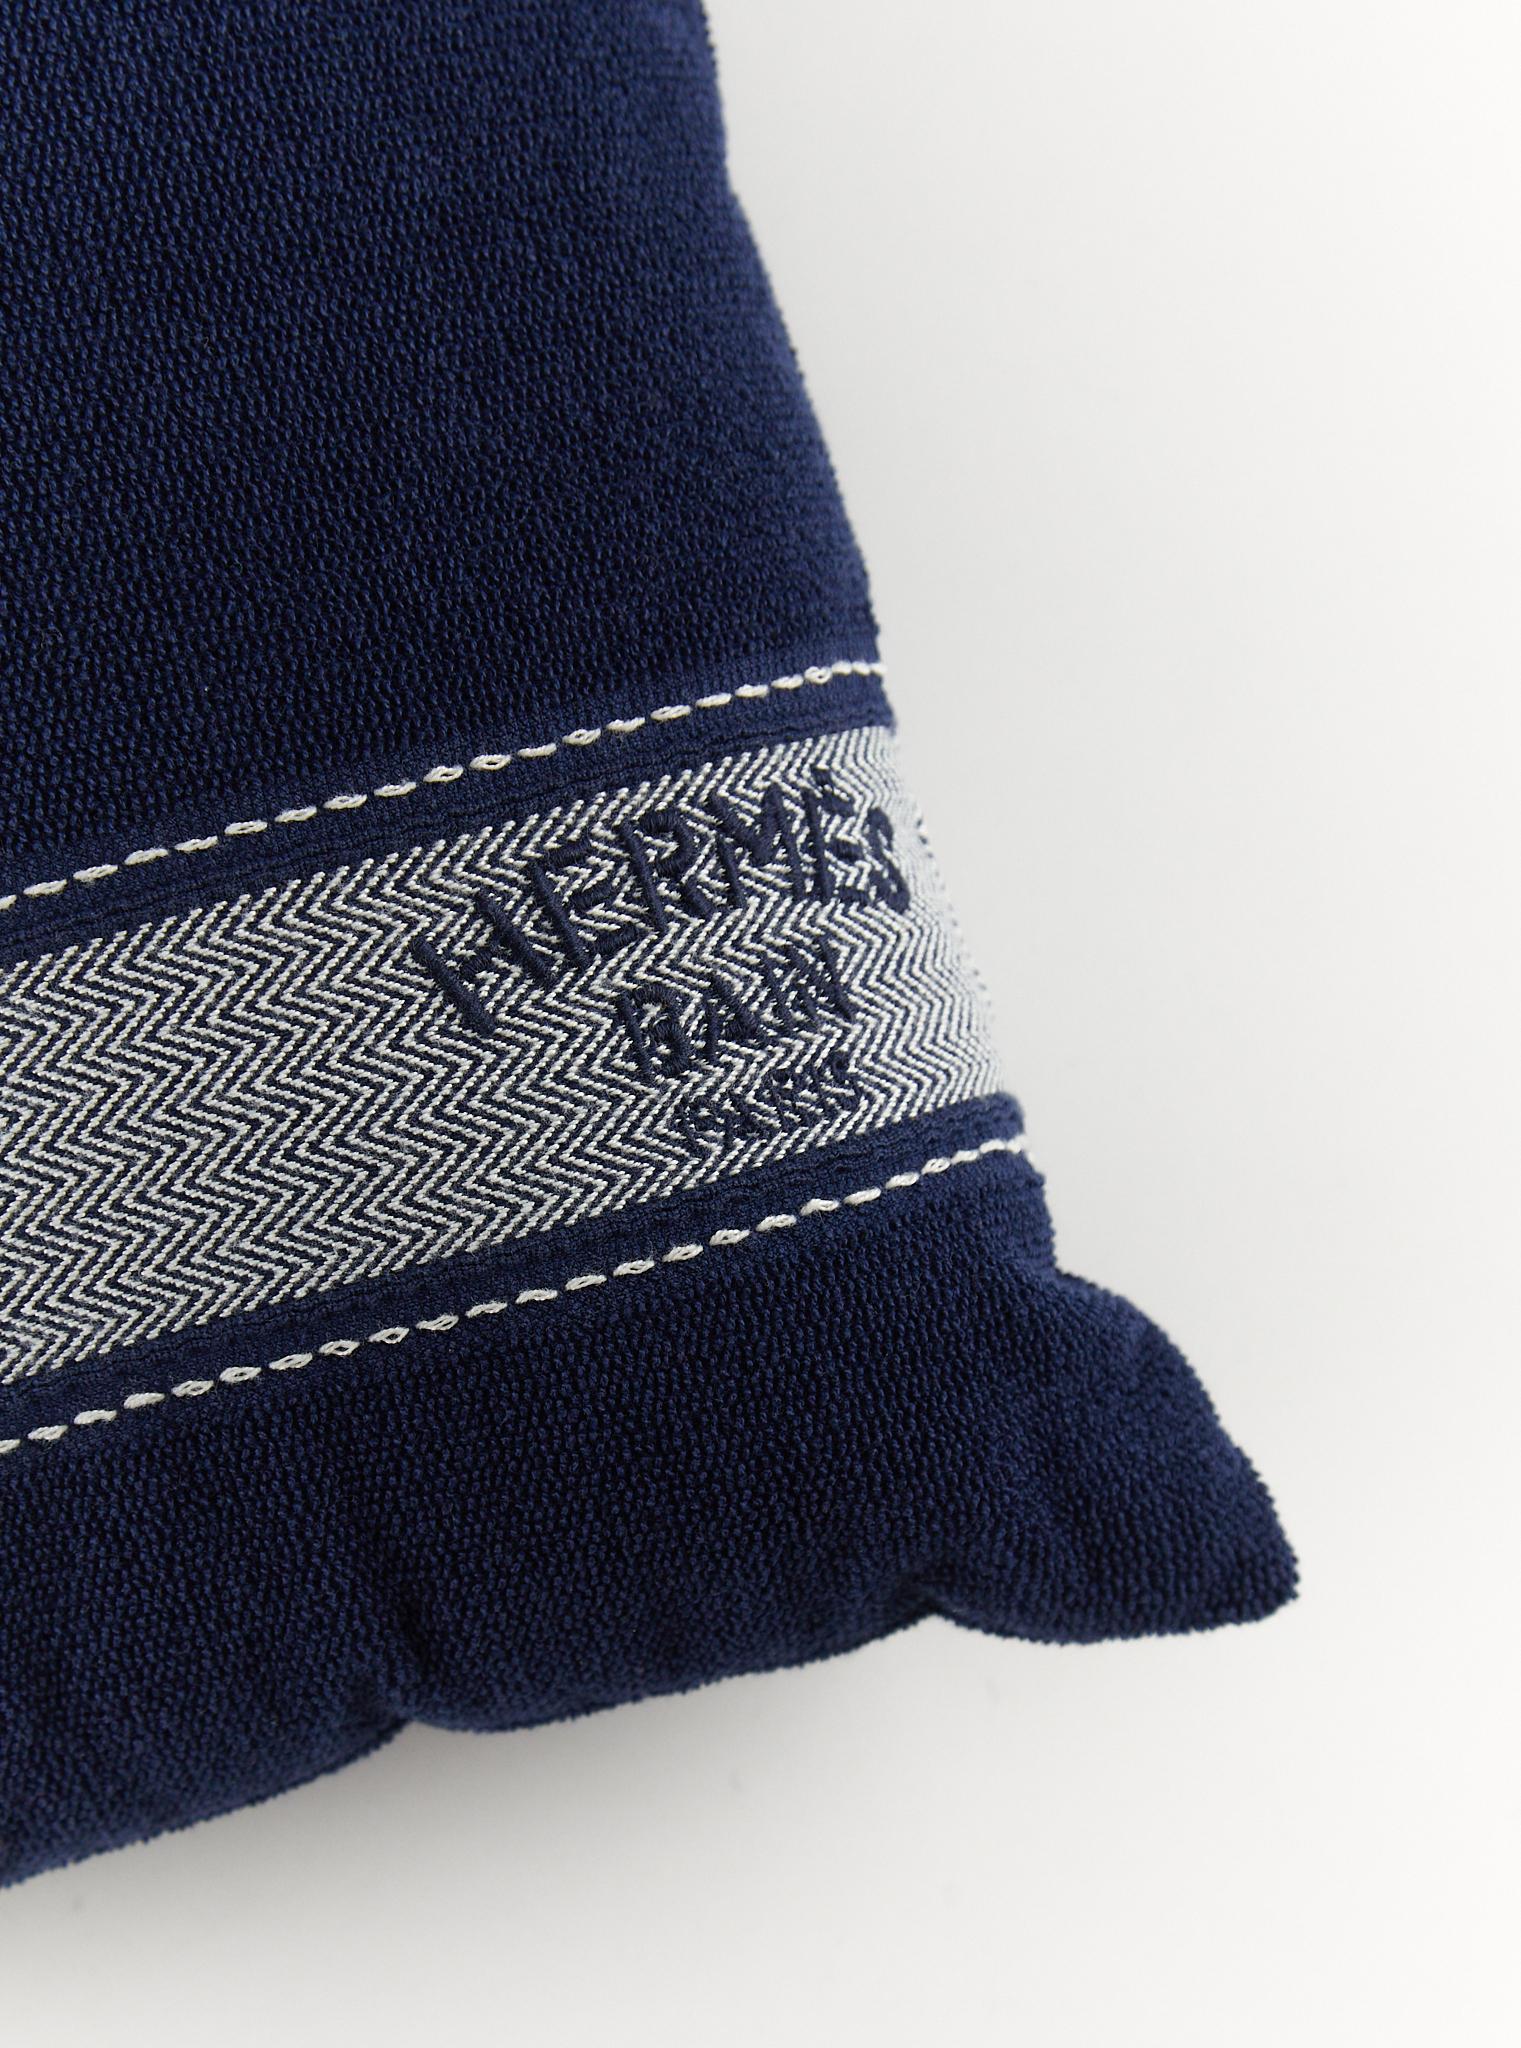 Hermès Strand-Kissen aus 100% Baumwolle

Hypoallergene Polyesterfüllung 

Abmessungen: 40 x 24 cm 

Hergestellt in Frankreich

